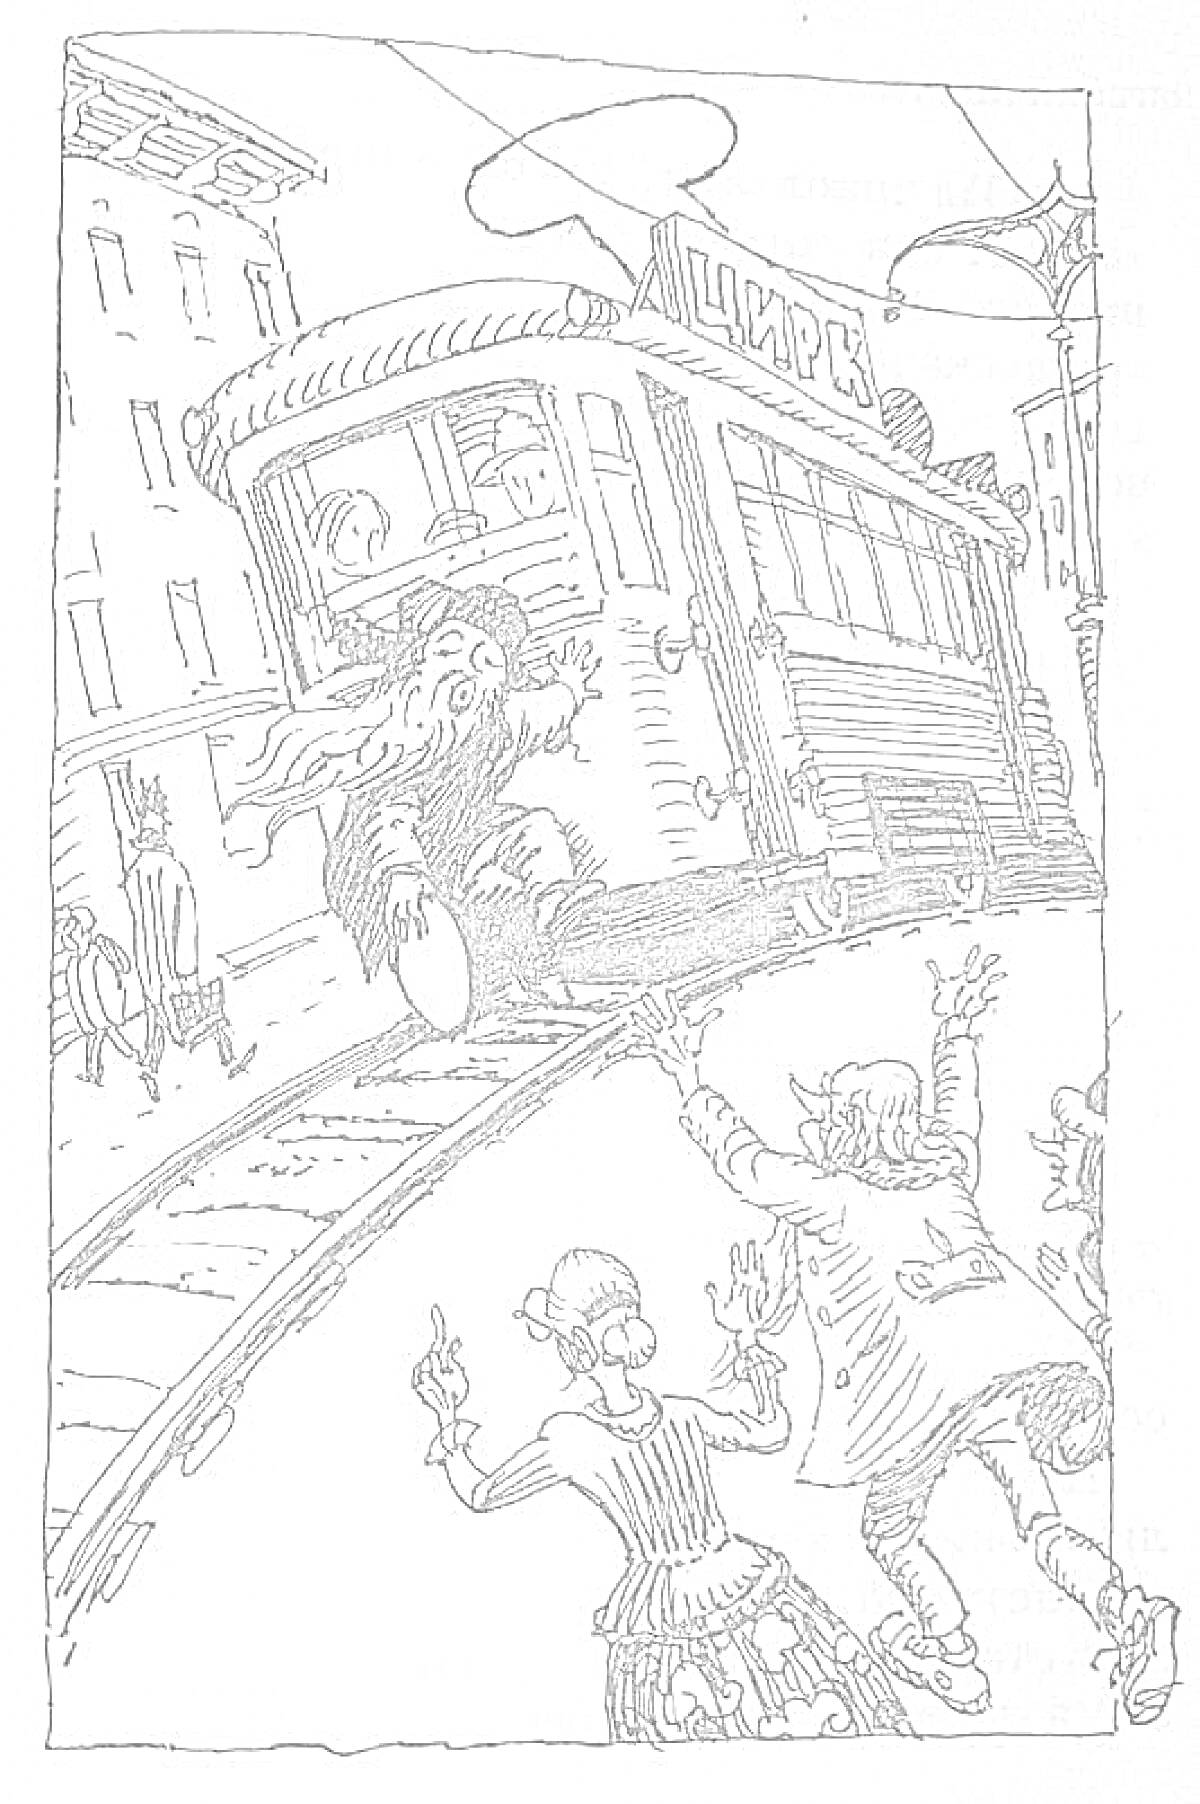 Старик с бородой убегает в трамвай, дети пытаются его догнать, вывеска с надписью 